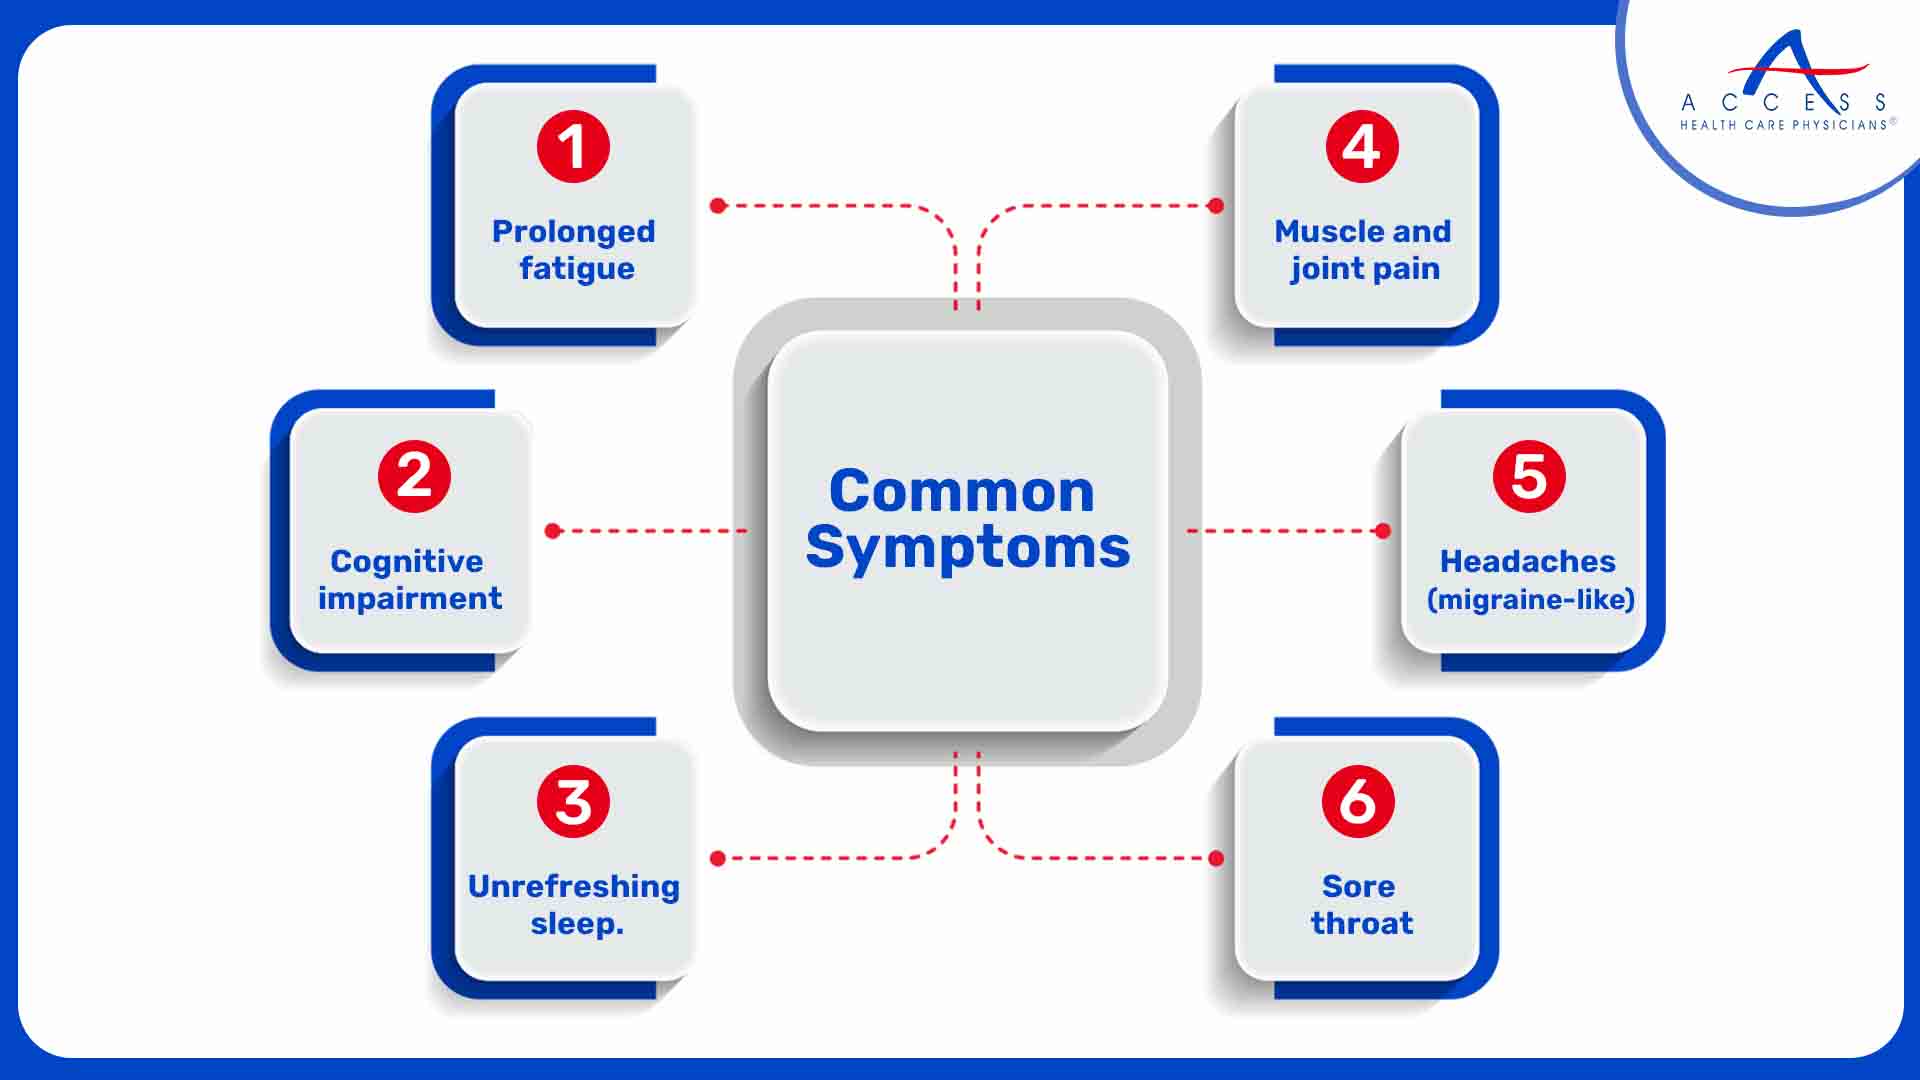 Common Symptoms